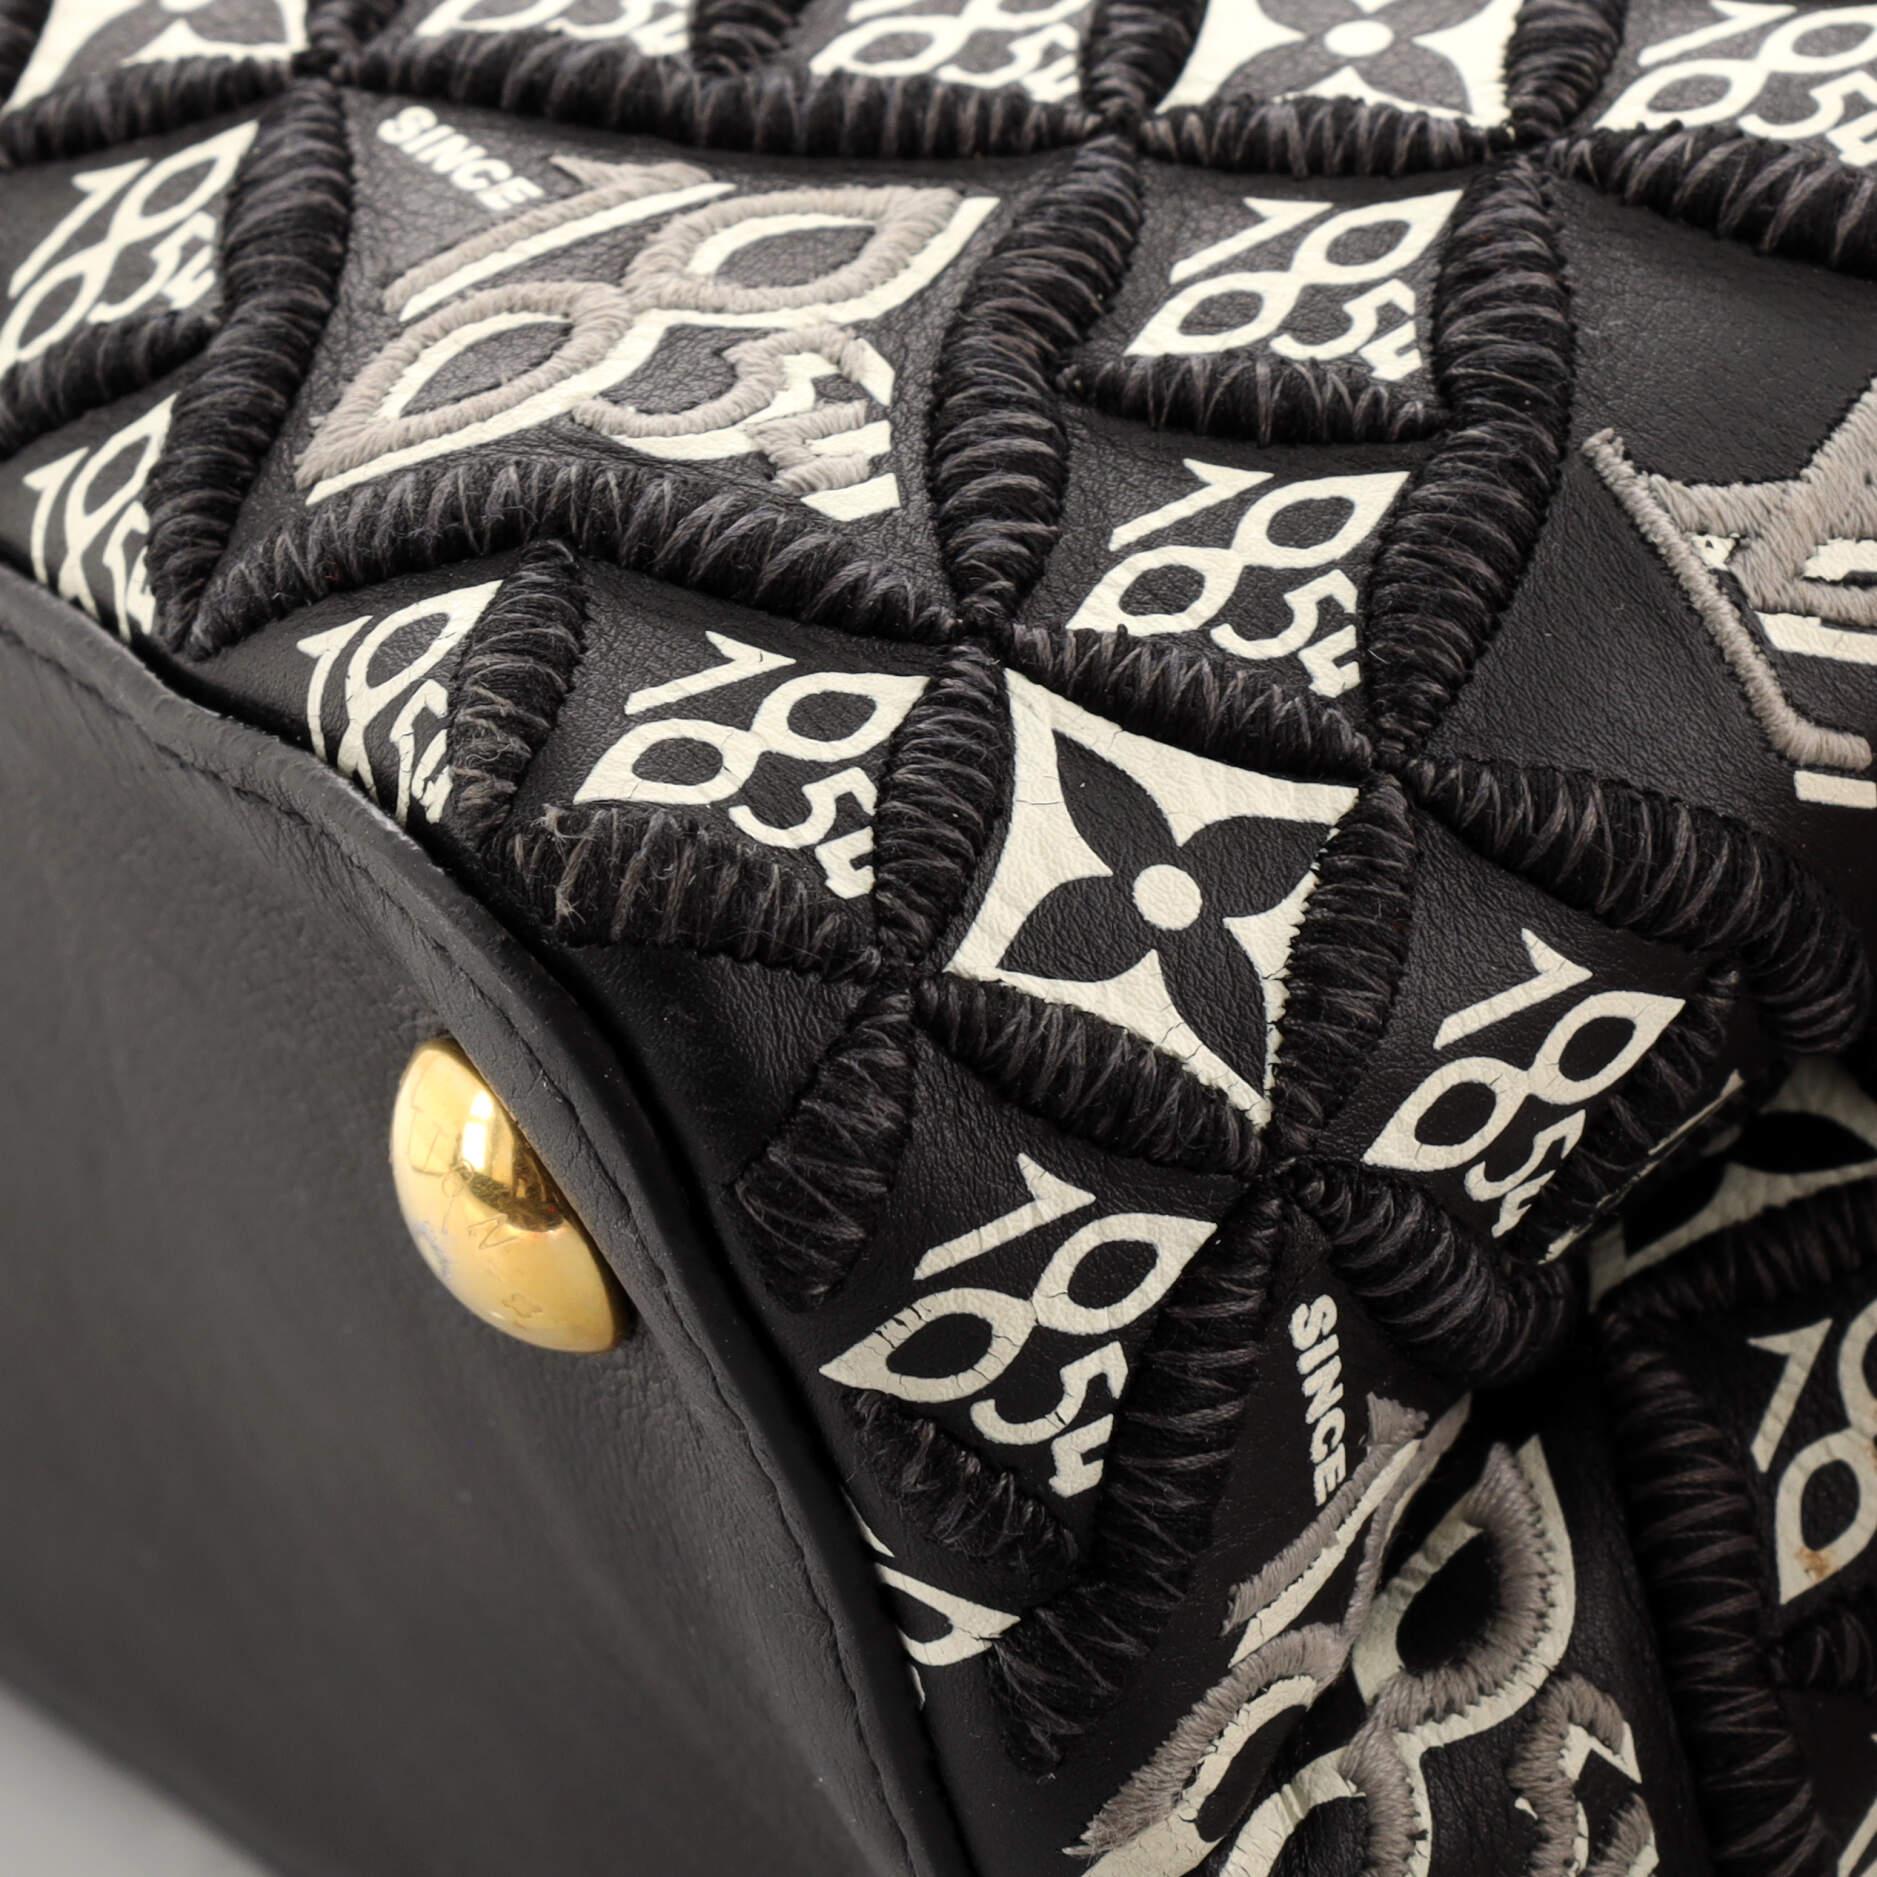 Louis Vuitton Capucines Bag Limited Edition Since 1854 Monogram Calfskin PM 2